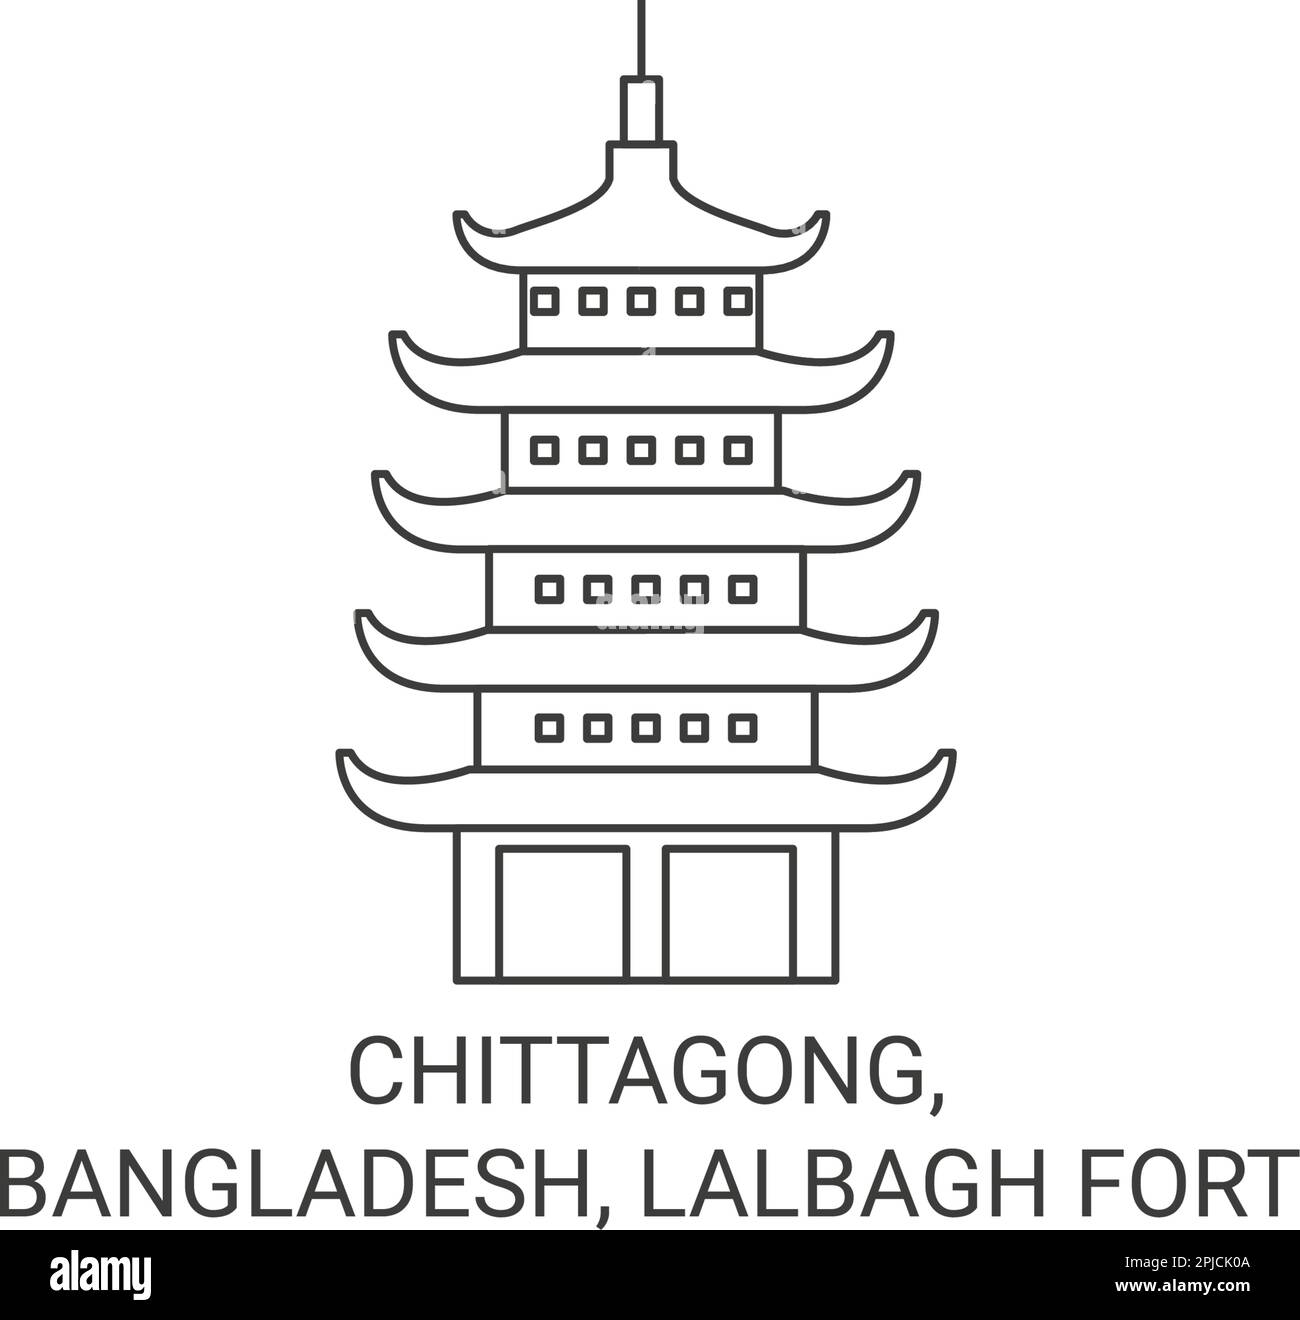 Bangladesh, Chittagong, Lalbagh Fort viaggio punto di riferimento vettore illustrazione Illustrazione Vettoriale